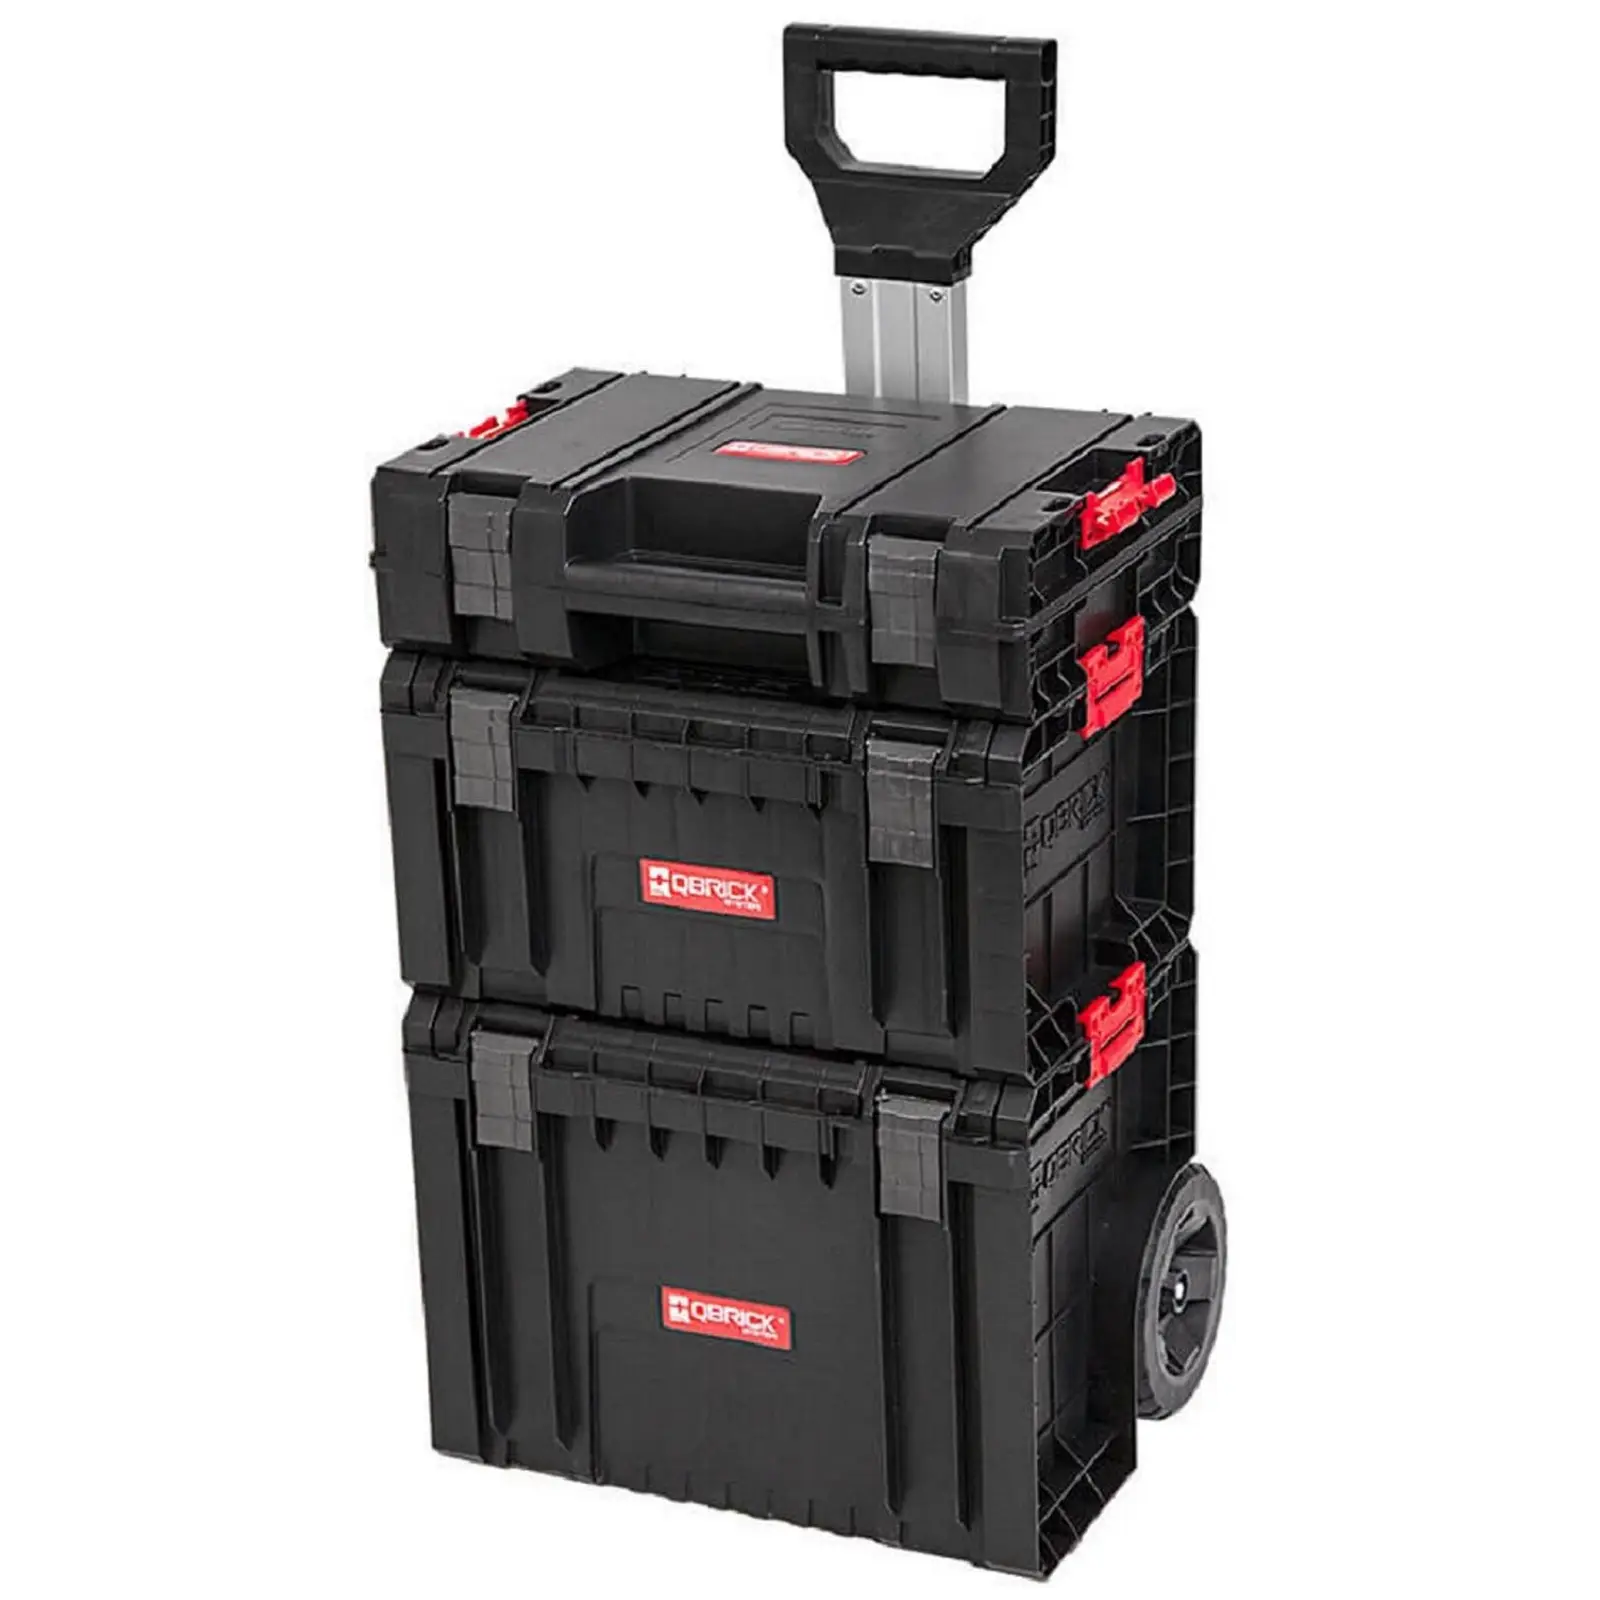 Mobilní kufr na nářadí System Pro – sada vozíku, krabice a kufru